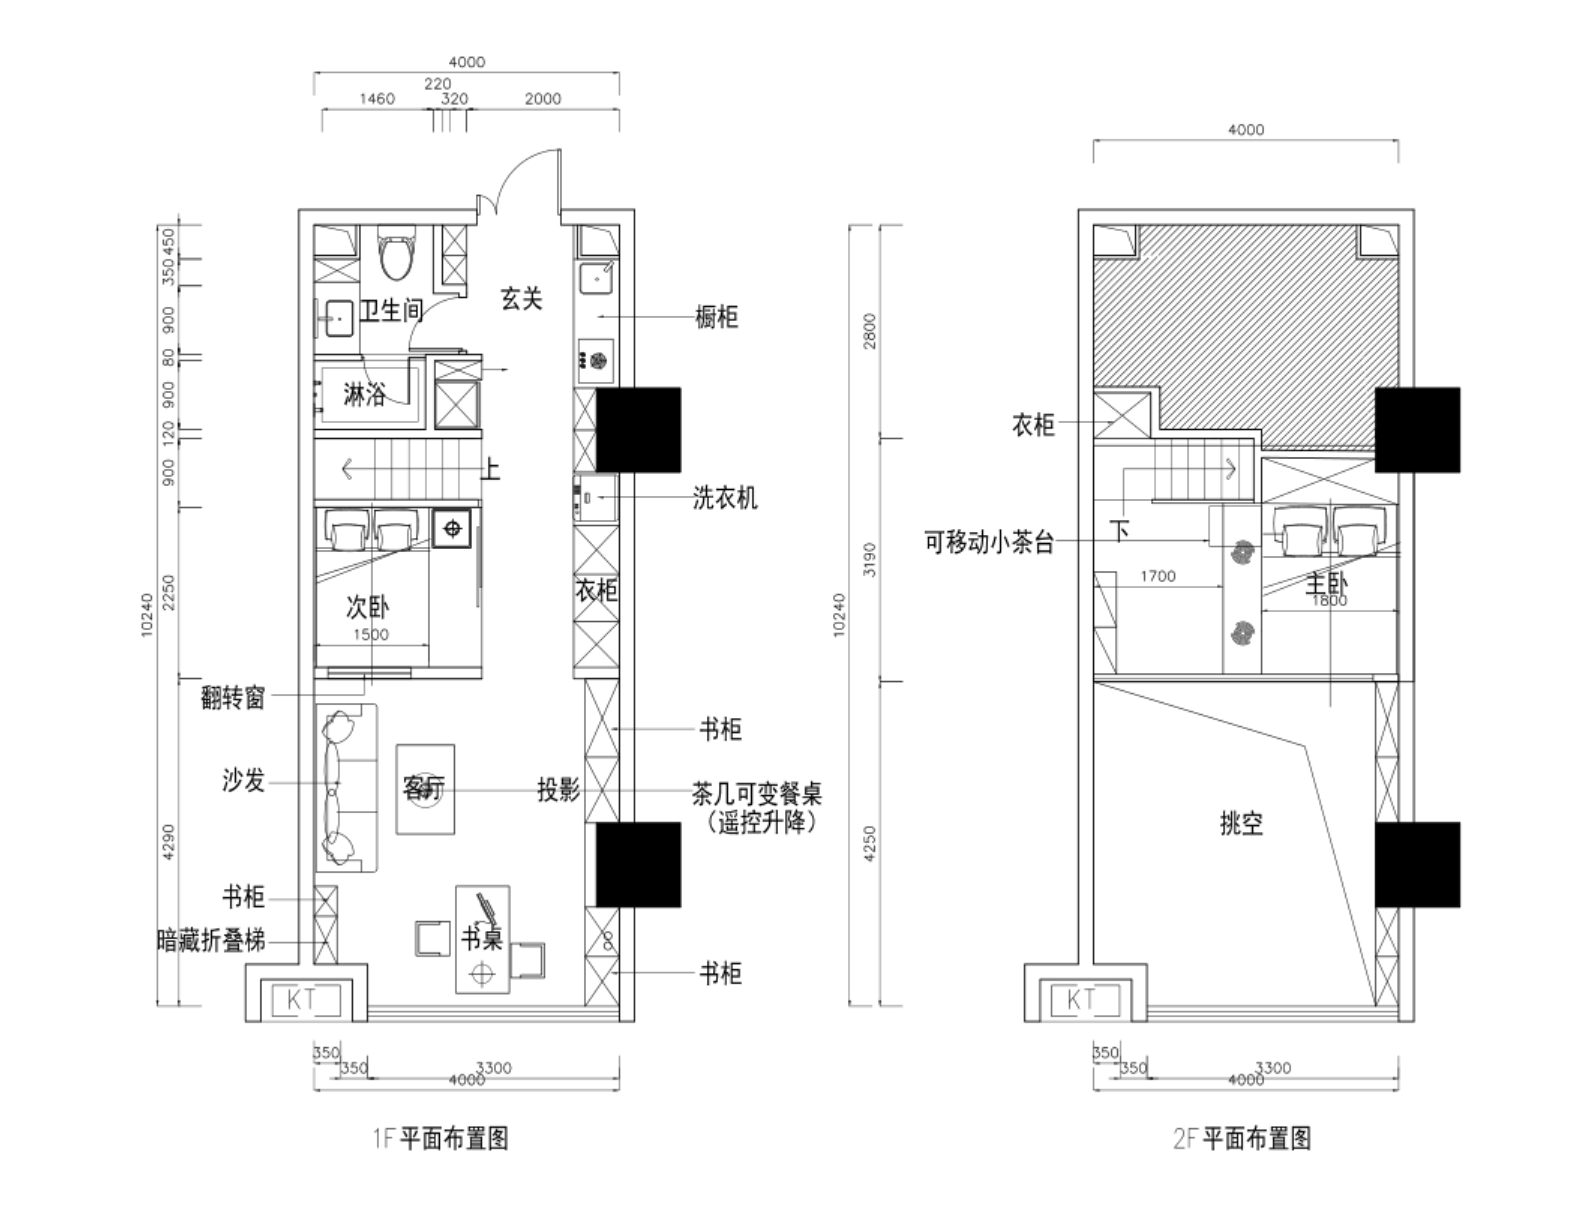 LOFT公寓设计竟然又多了这么“高手”设计方法 - 知乎